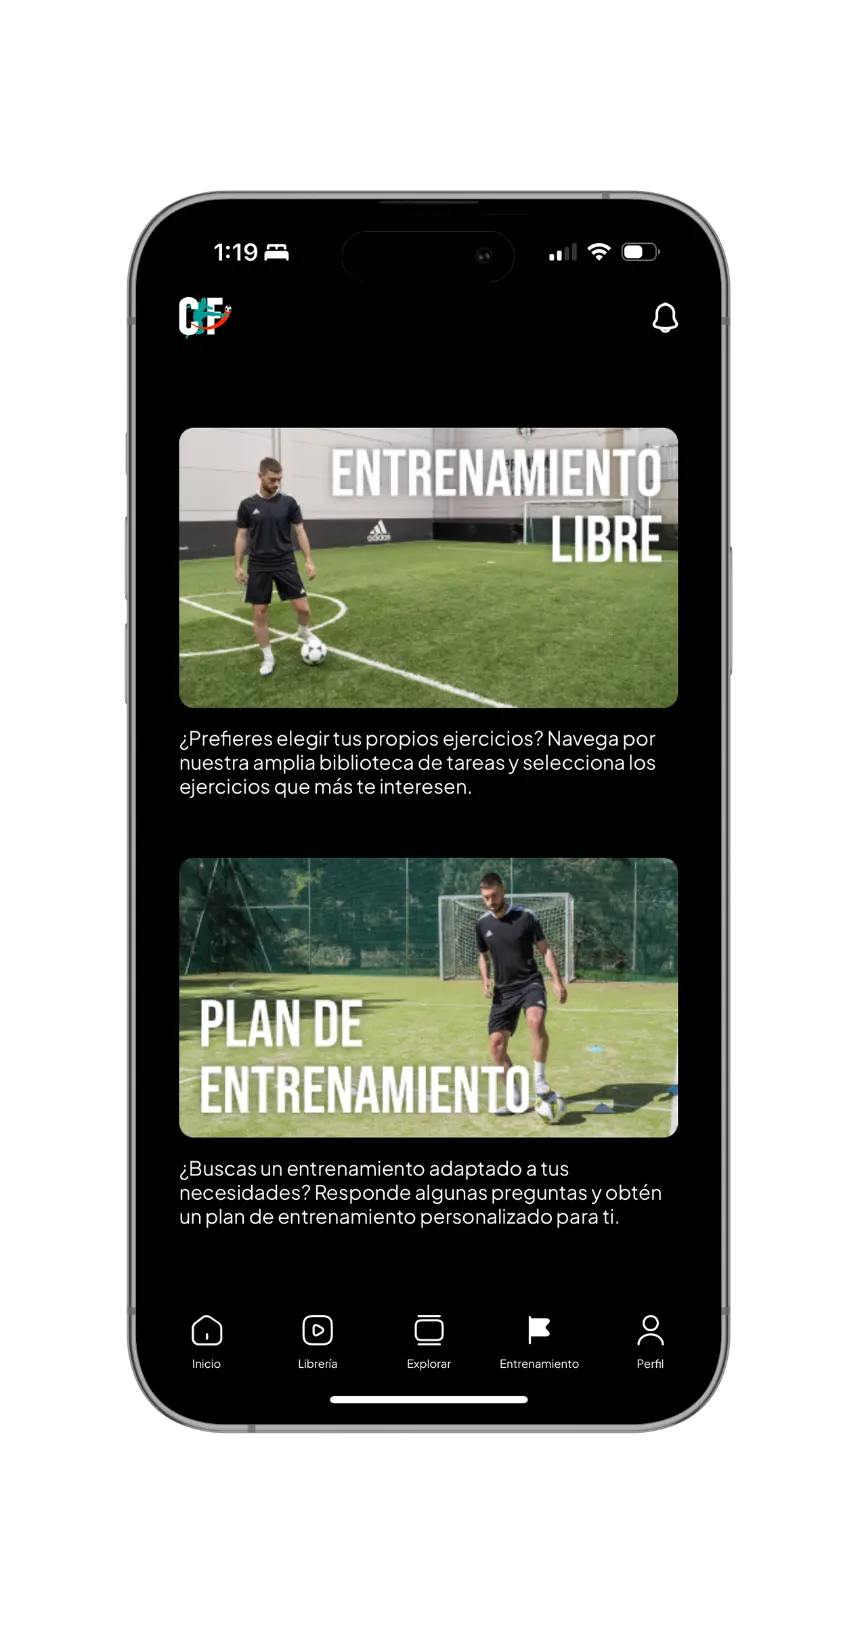 Captura de pantalla de una aplicación móvil de entrenamiento de fútbol mostrando la sección de entrenamiento libre.